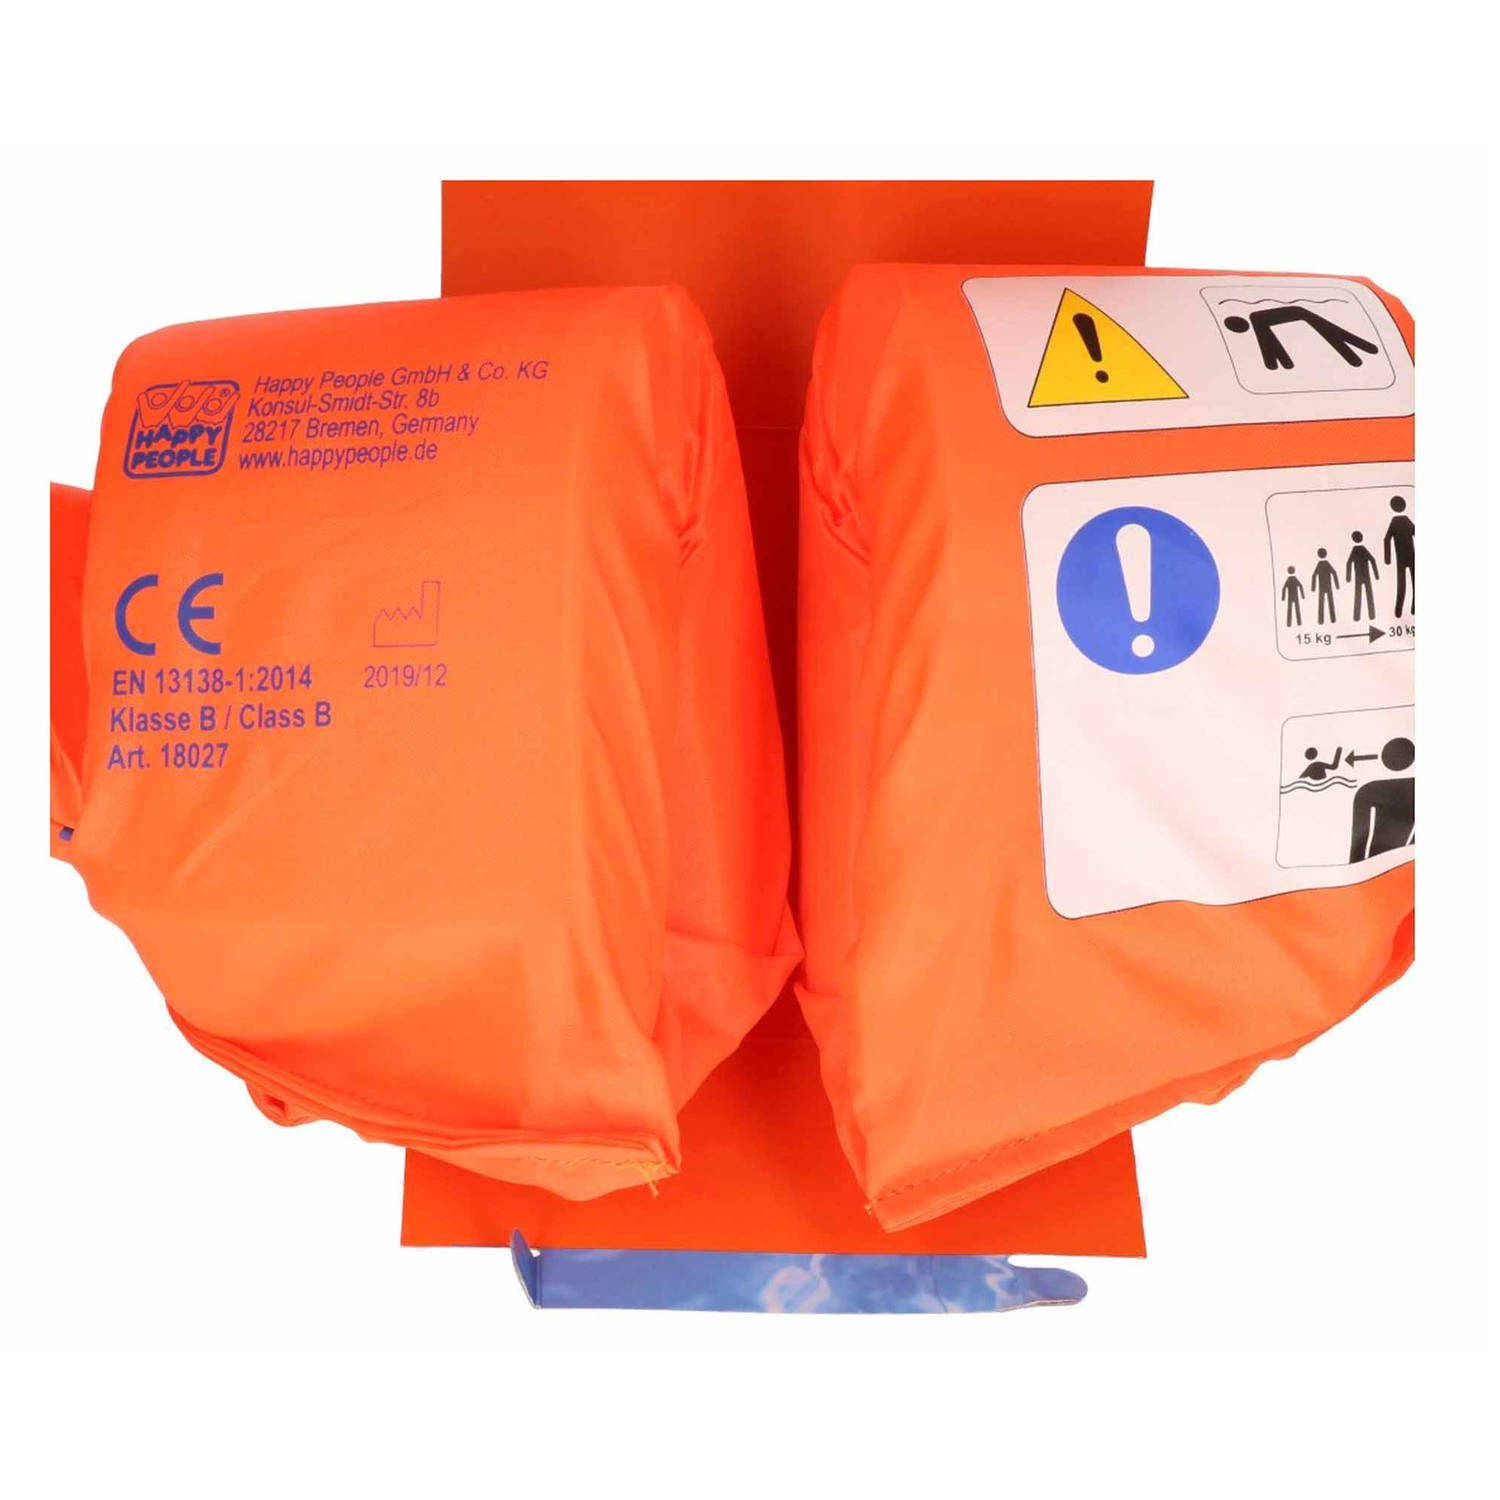 Sobriquette beweeglijkheid Binnen Zwemhulpmiddel 2-in-1 oranje zwemband met zwembandjes 15-30 kilo -  Zwembandjes | Blokker